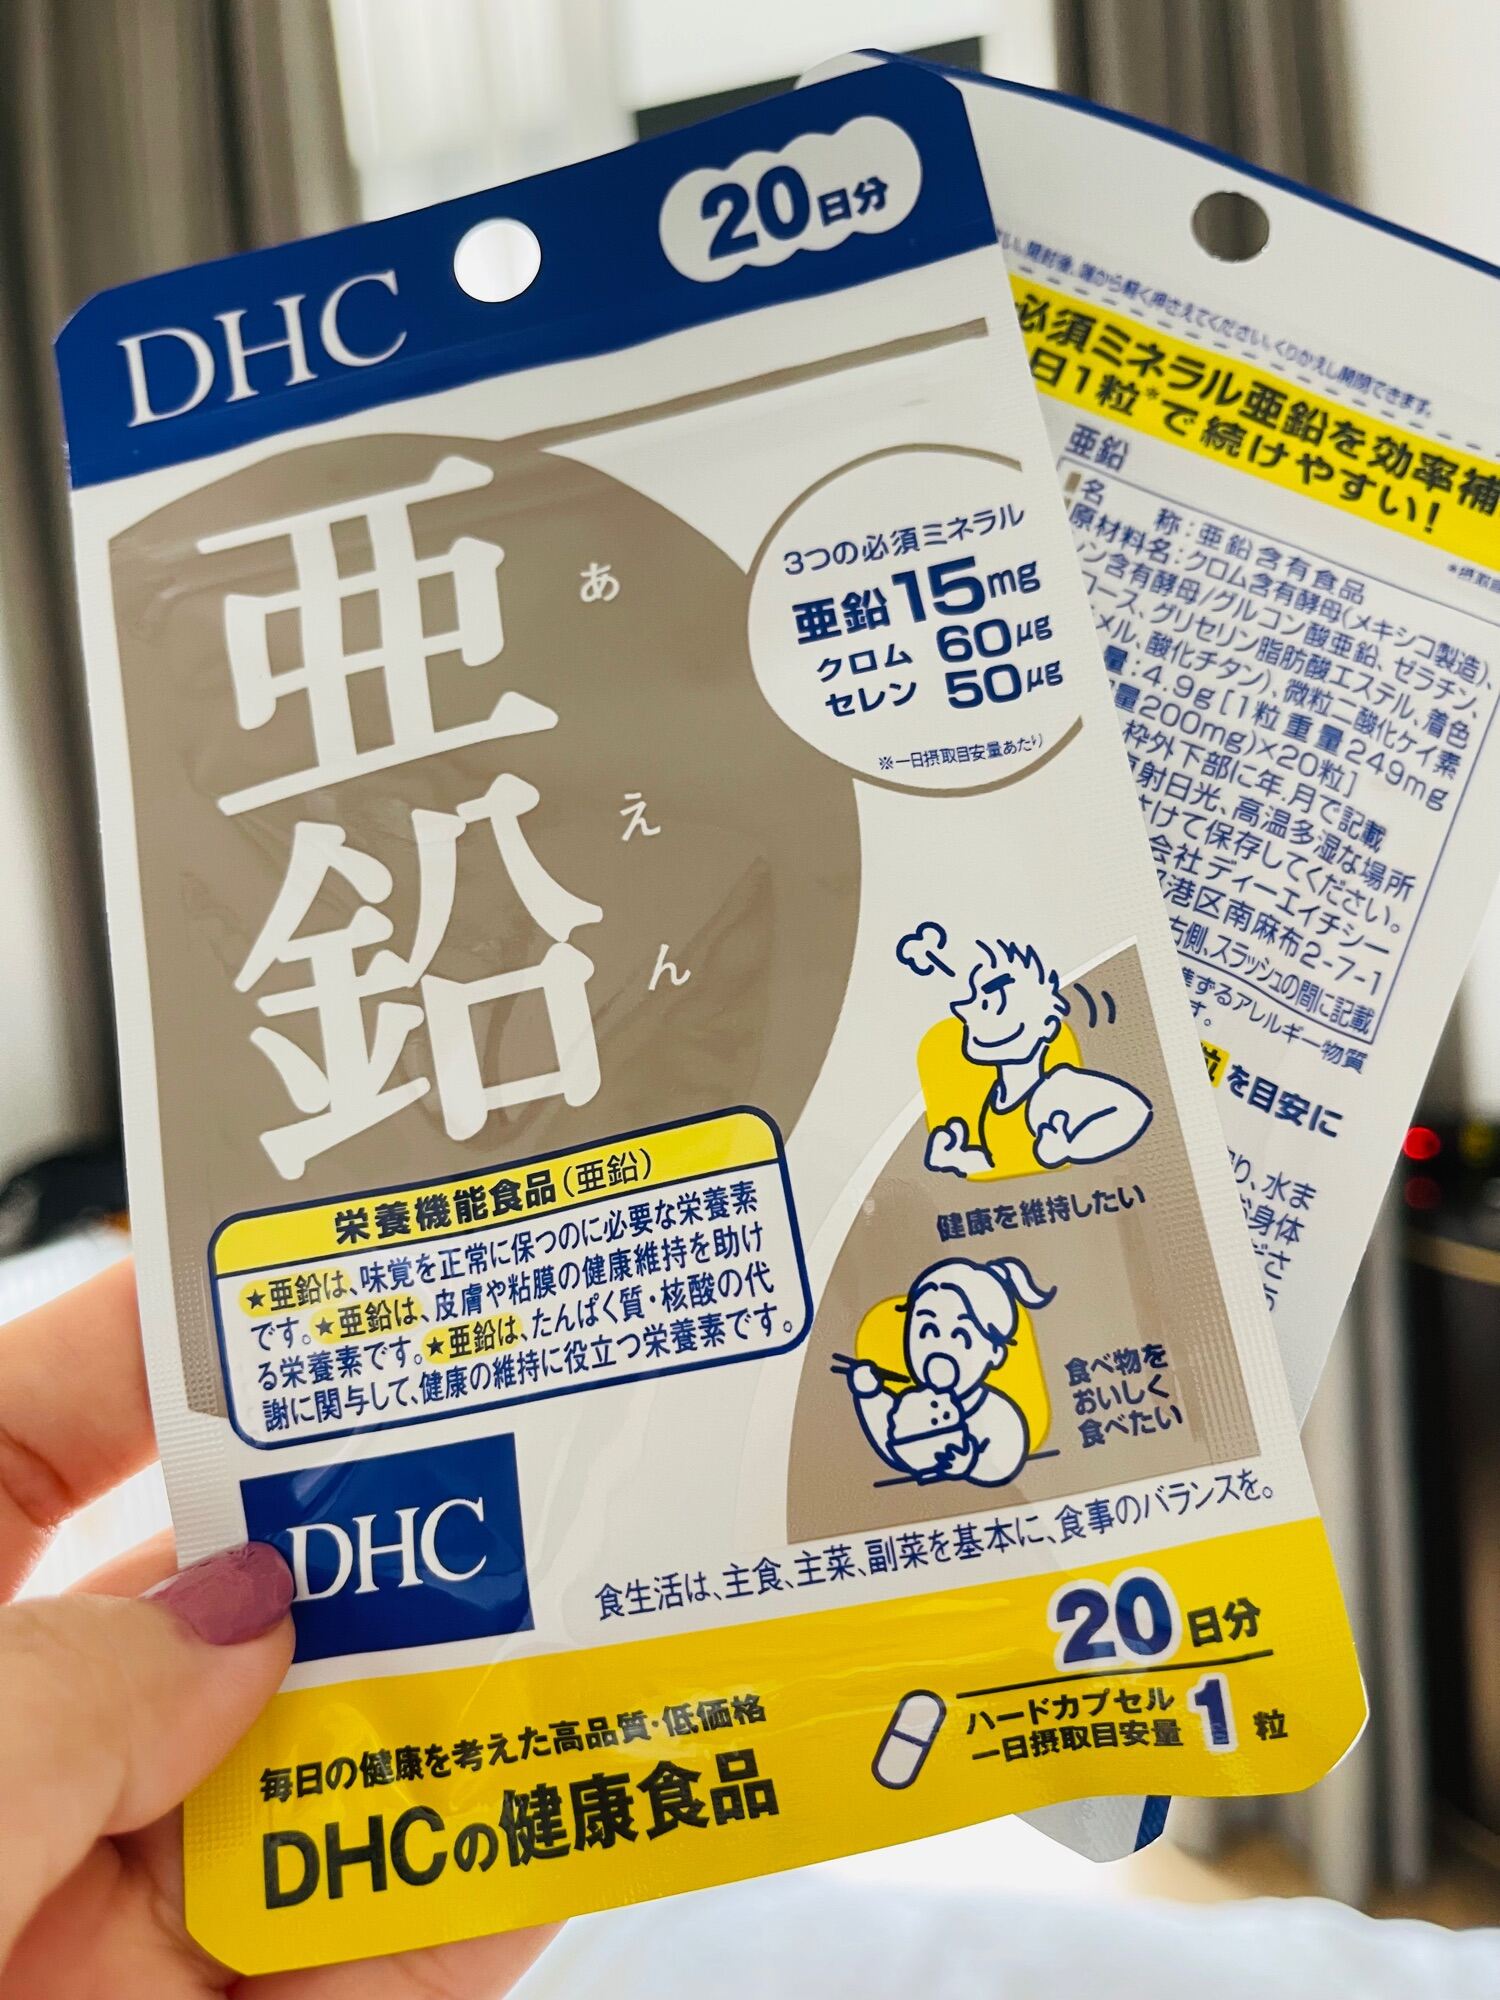 DHC KẼM 20 NGÀY - DHC 亜鉛 20日分 - HÀNG NỘI ĐỊA NHẬT - Chăm sóc da mụn |  VitaminDep.com